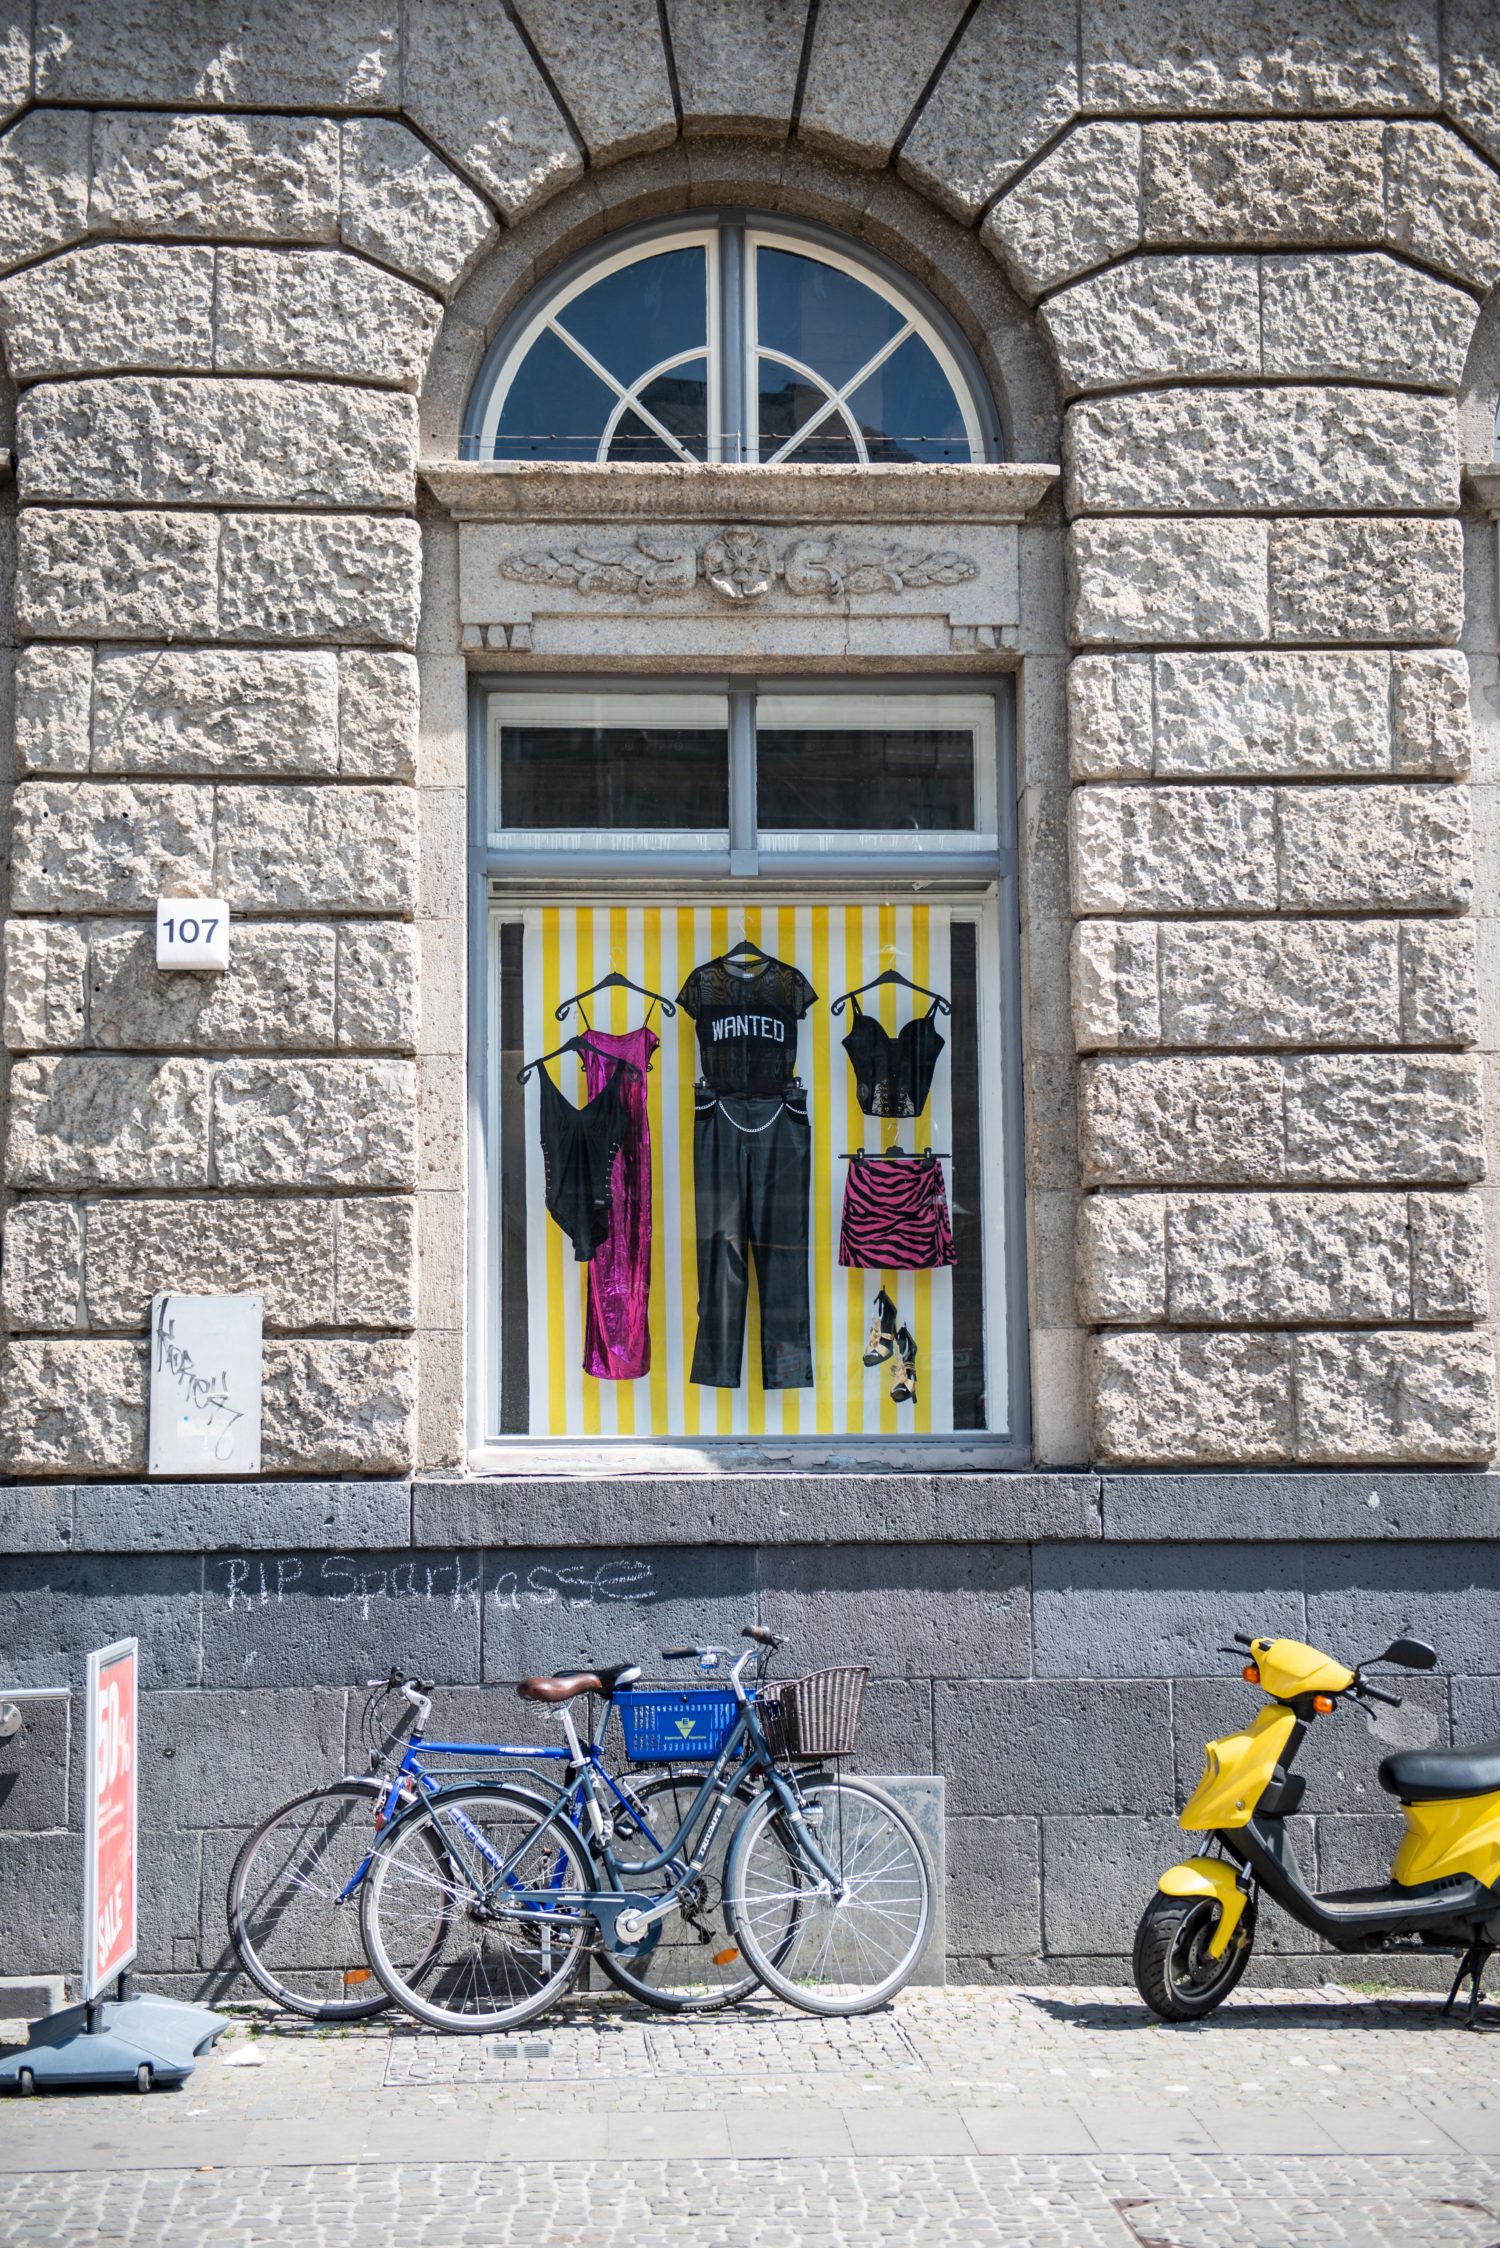 Warenangebot einer Einkaufsmeile: Modeboutique mit Straßenchic. Foto: F. Anthea Schaap